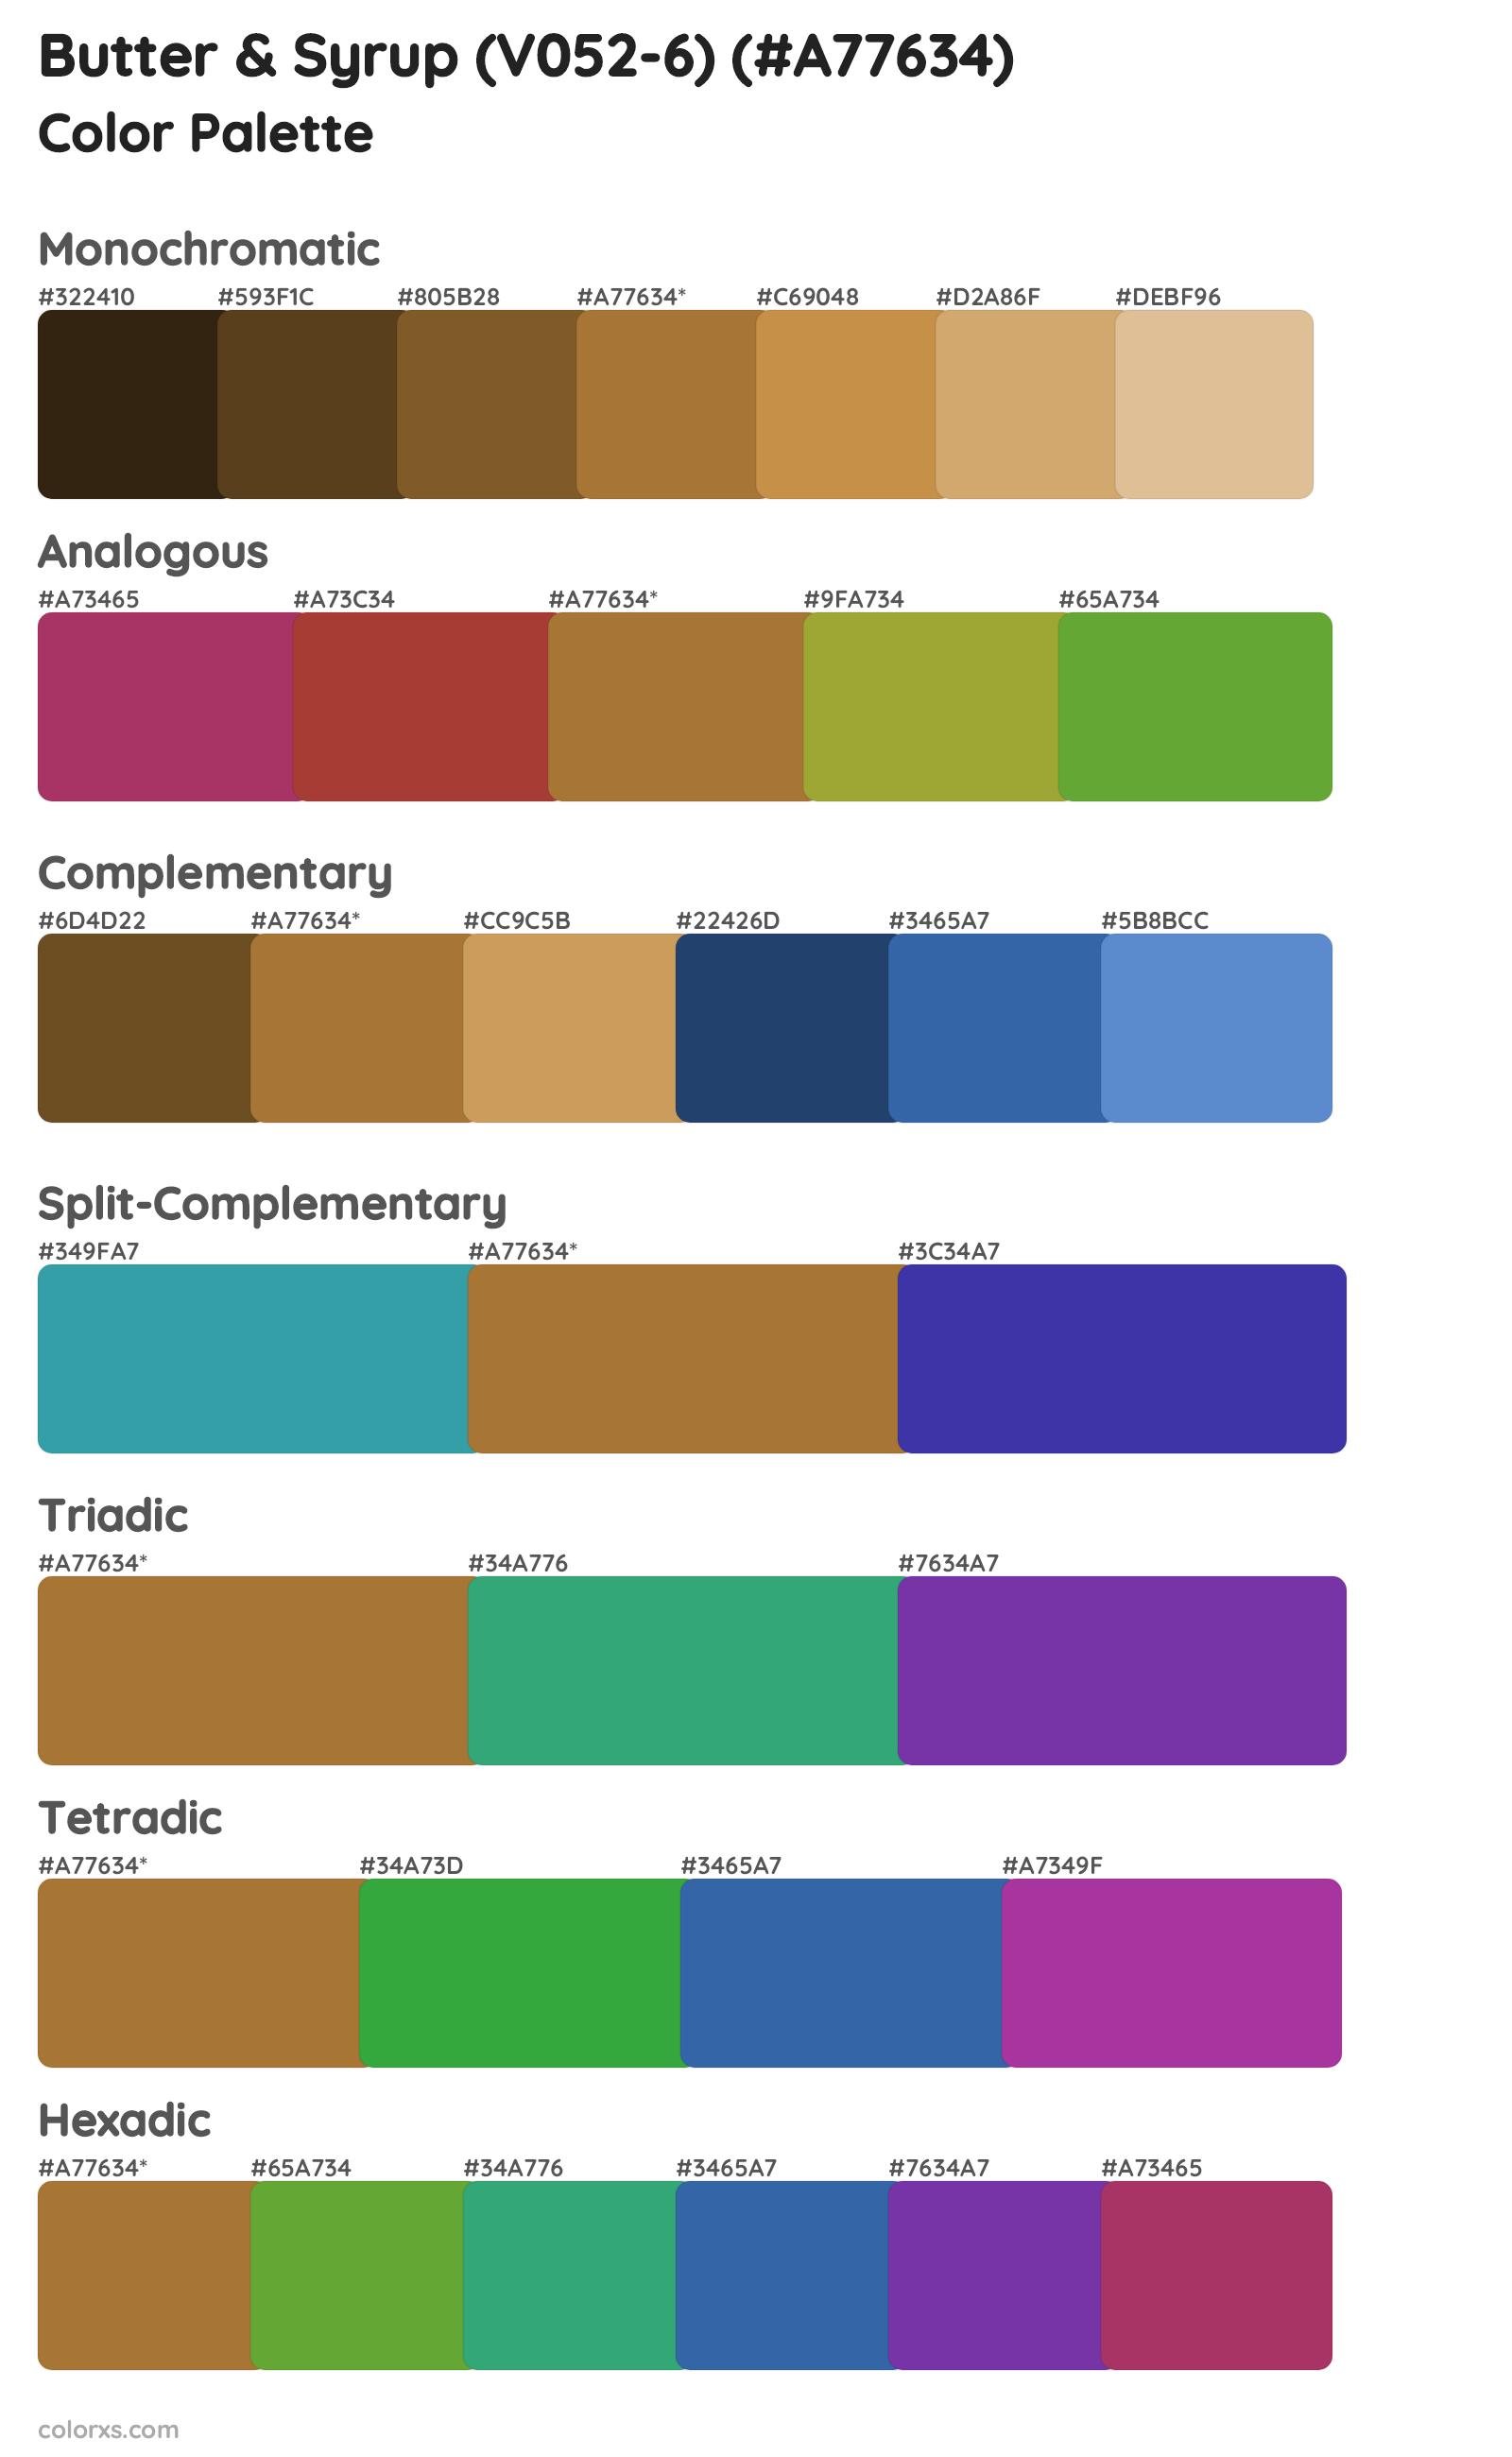 Butter & Syrup (V052-6) Color Scheme Palettes